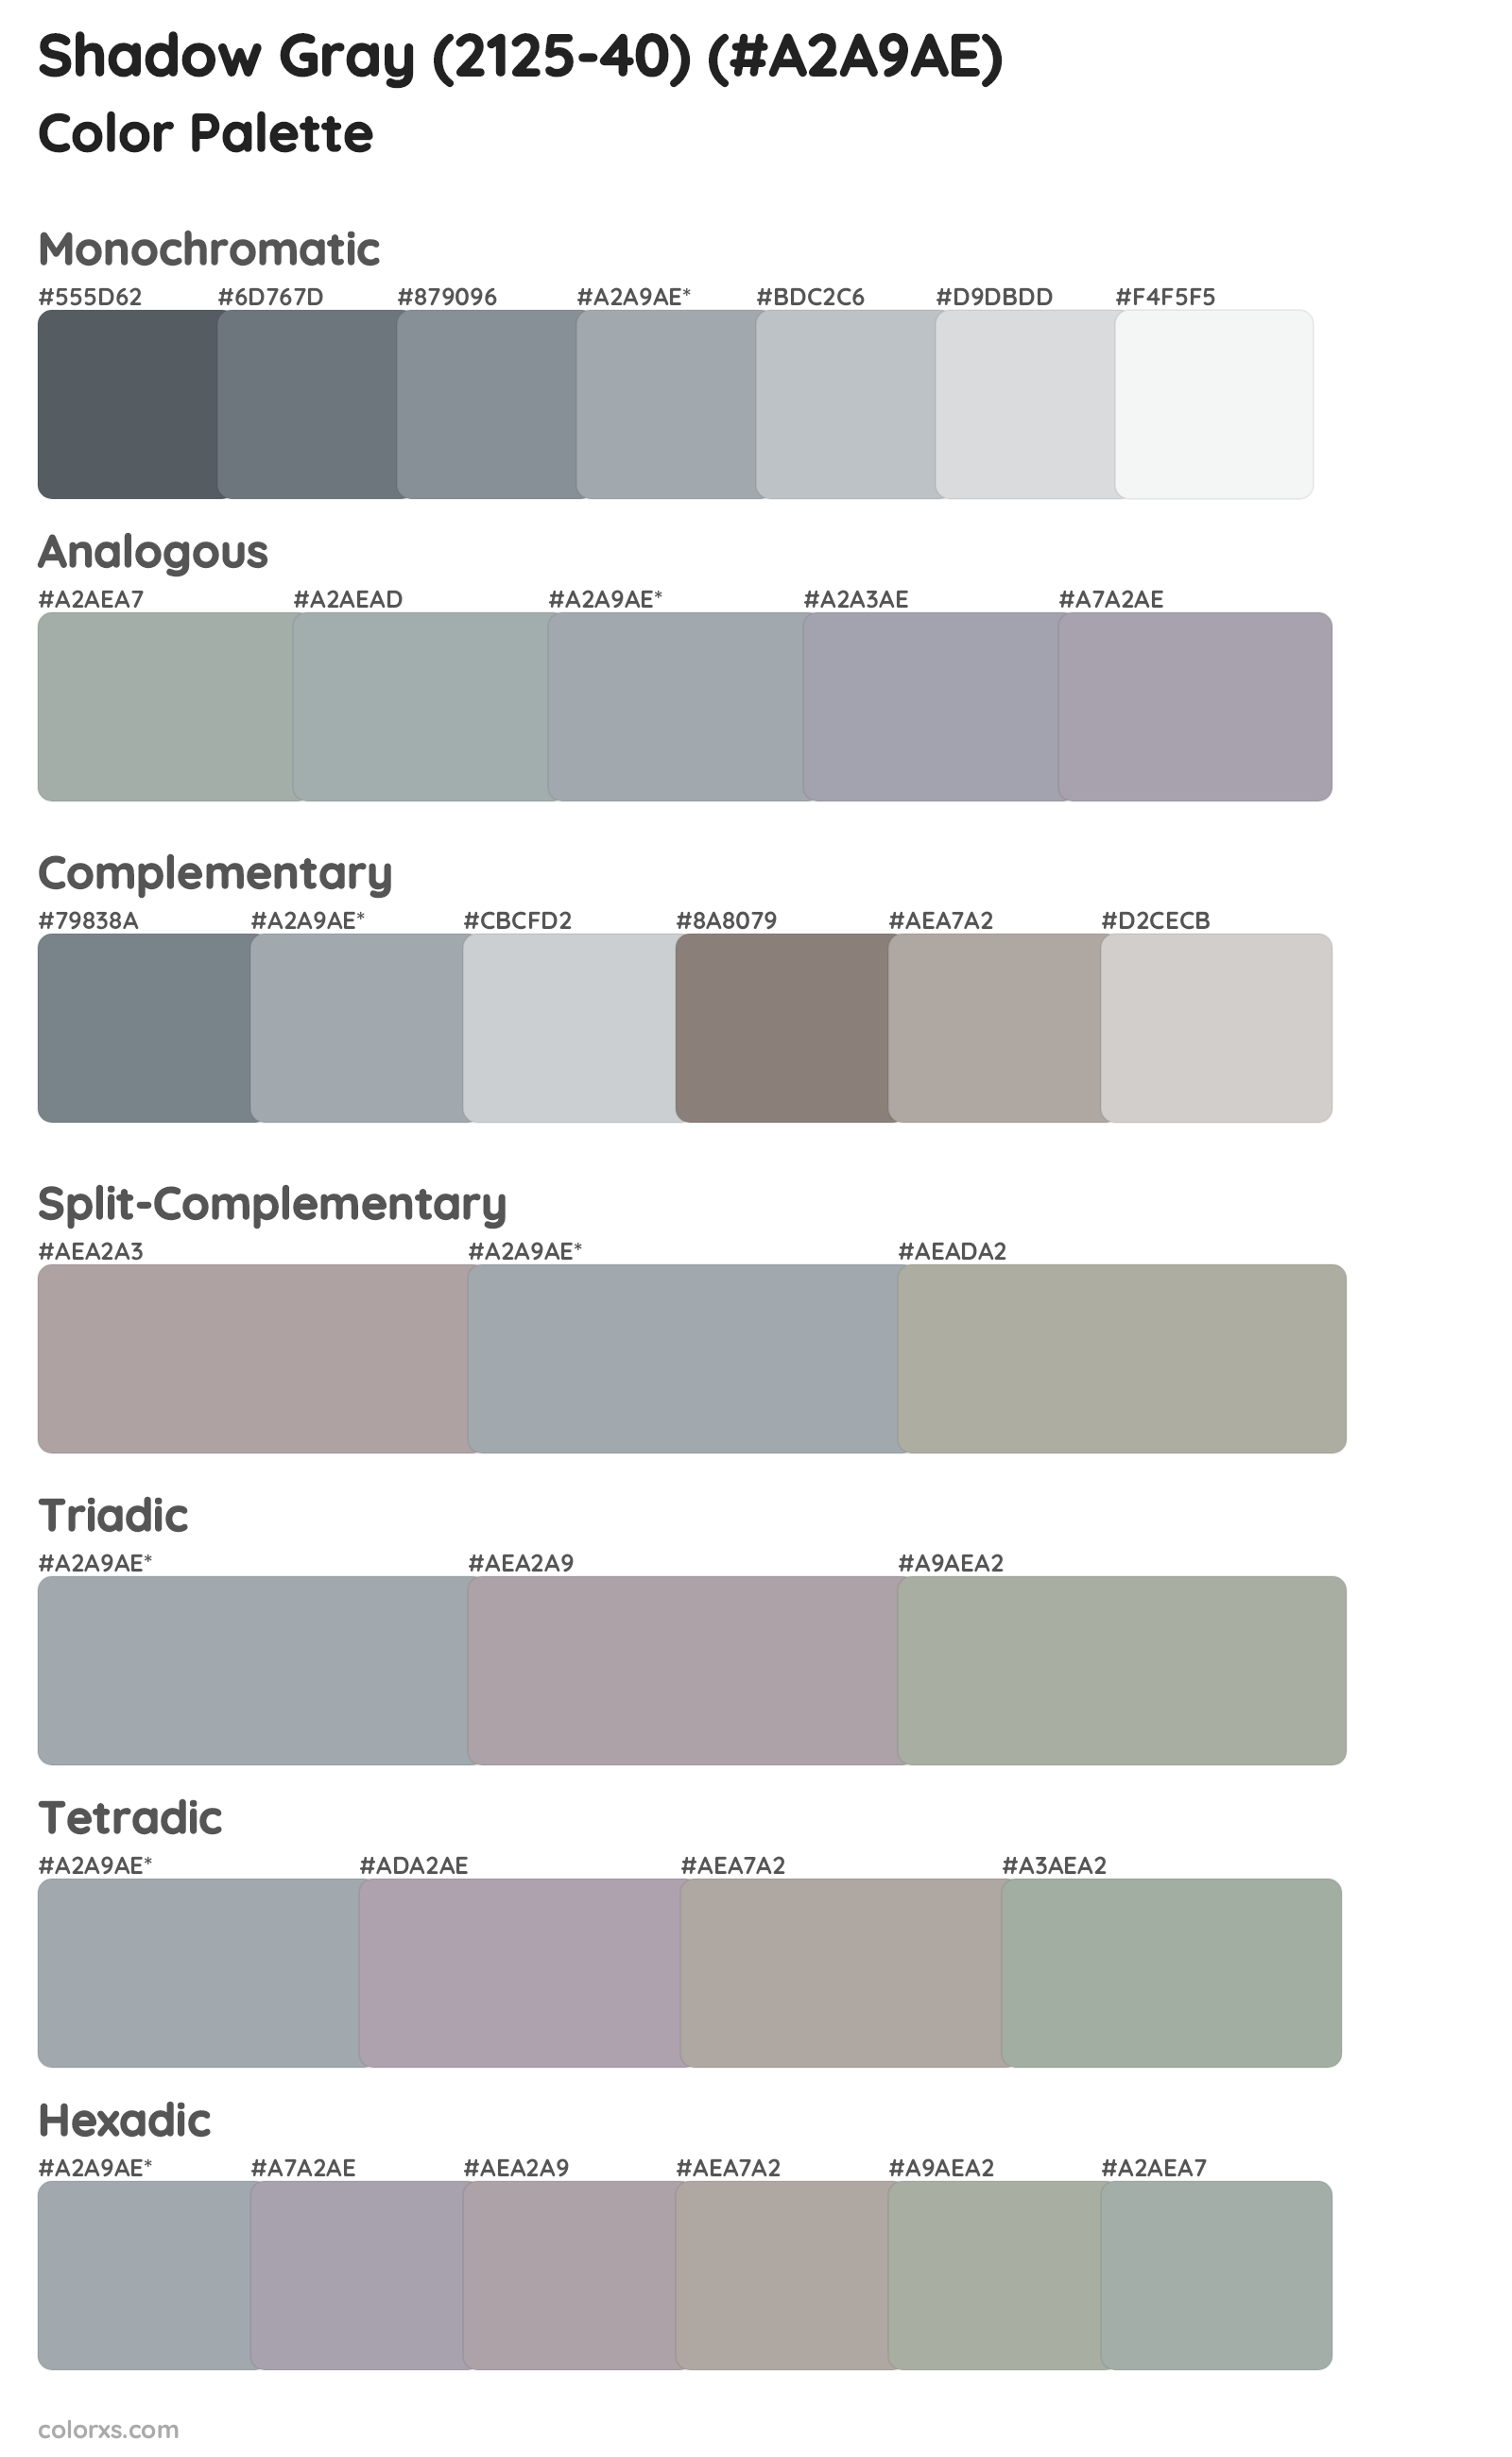 Shadow Gray (2125-40) Color Scheme Palettes